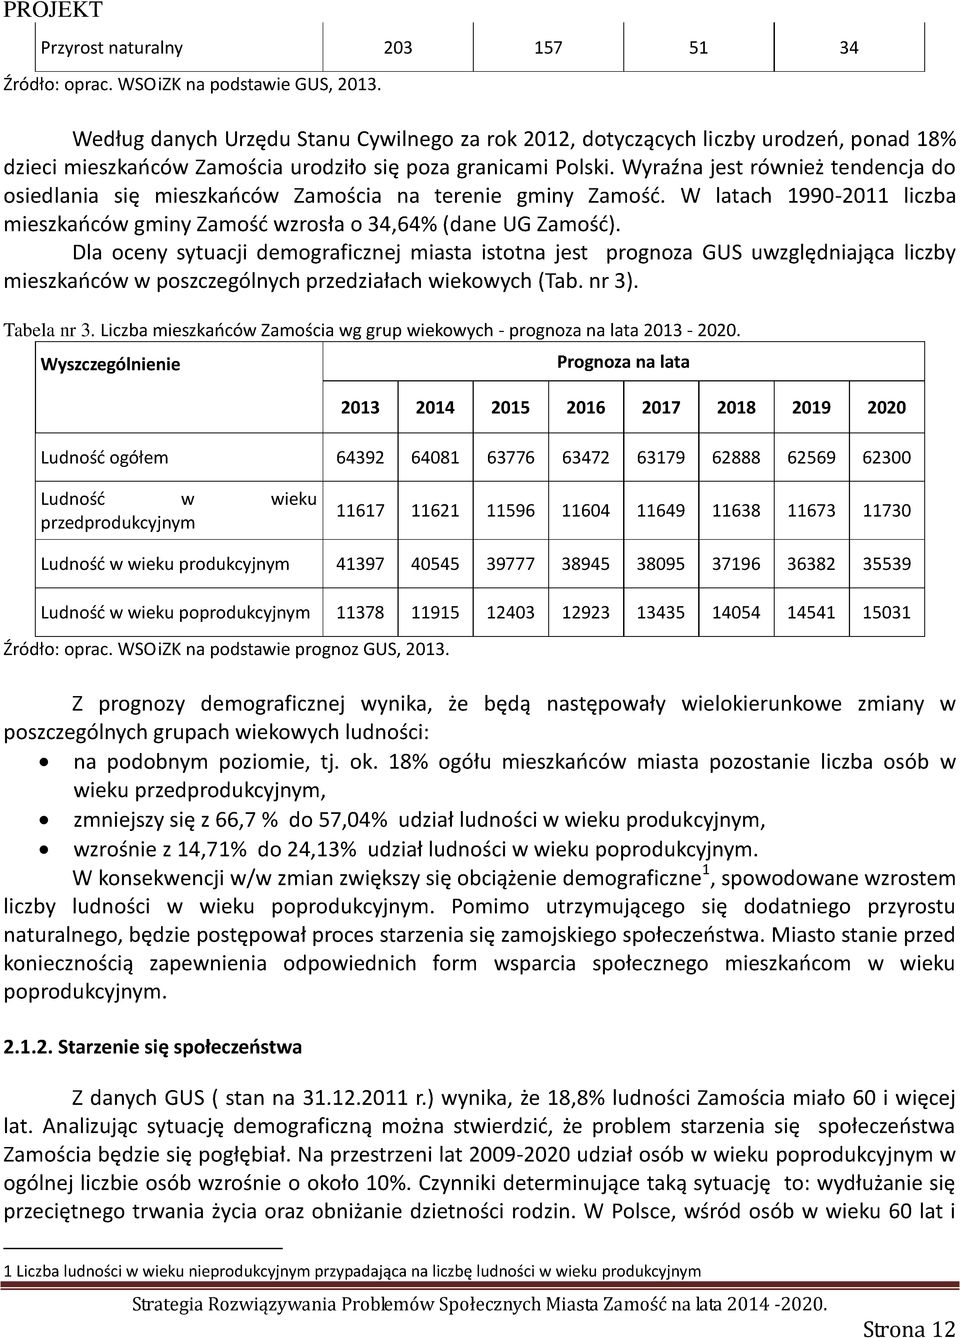 Wyraźna jest również tendencja do osiedlania się mieszkańców Zamościa na terenie gminy Zamość. W latach 1990-2011 liczba mieszkańców gminy Zamość wzrosła o 34,64% (dane UG Zamość).